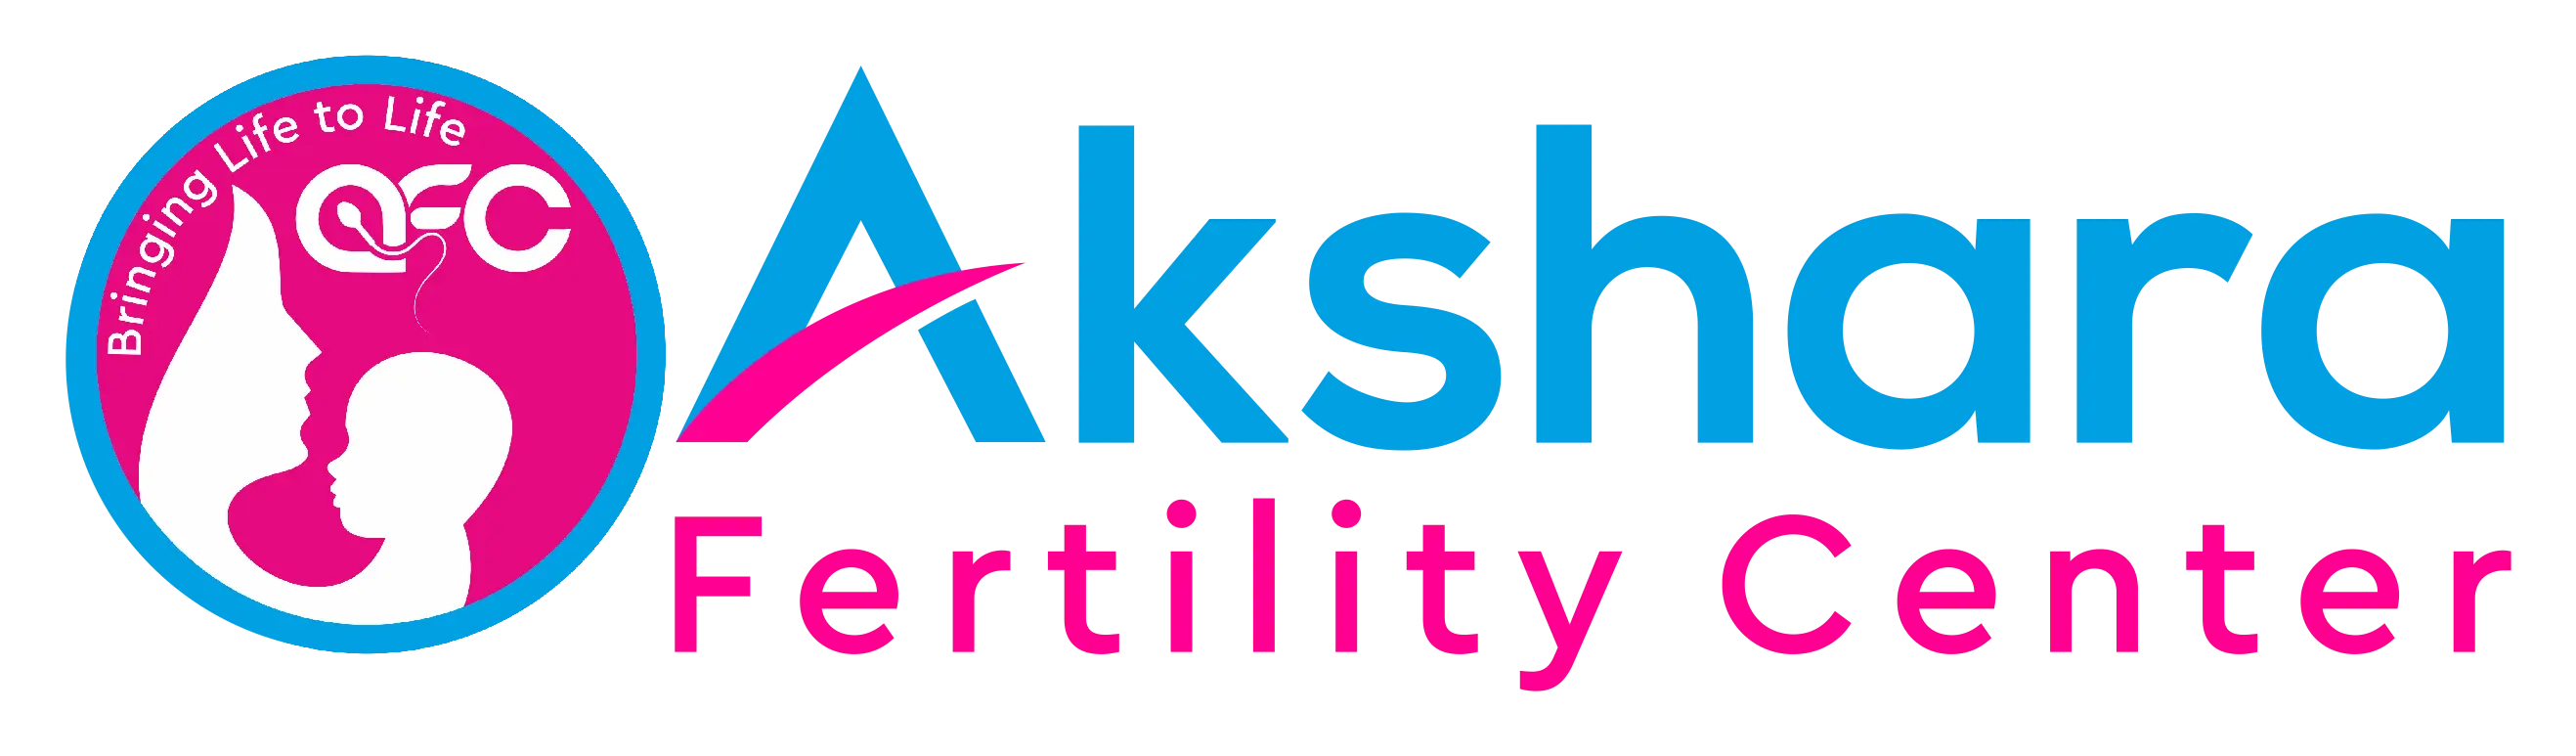 Best Fertility Center in Chennai